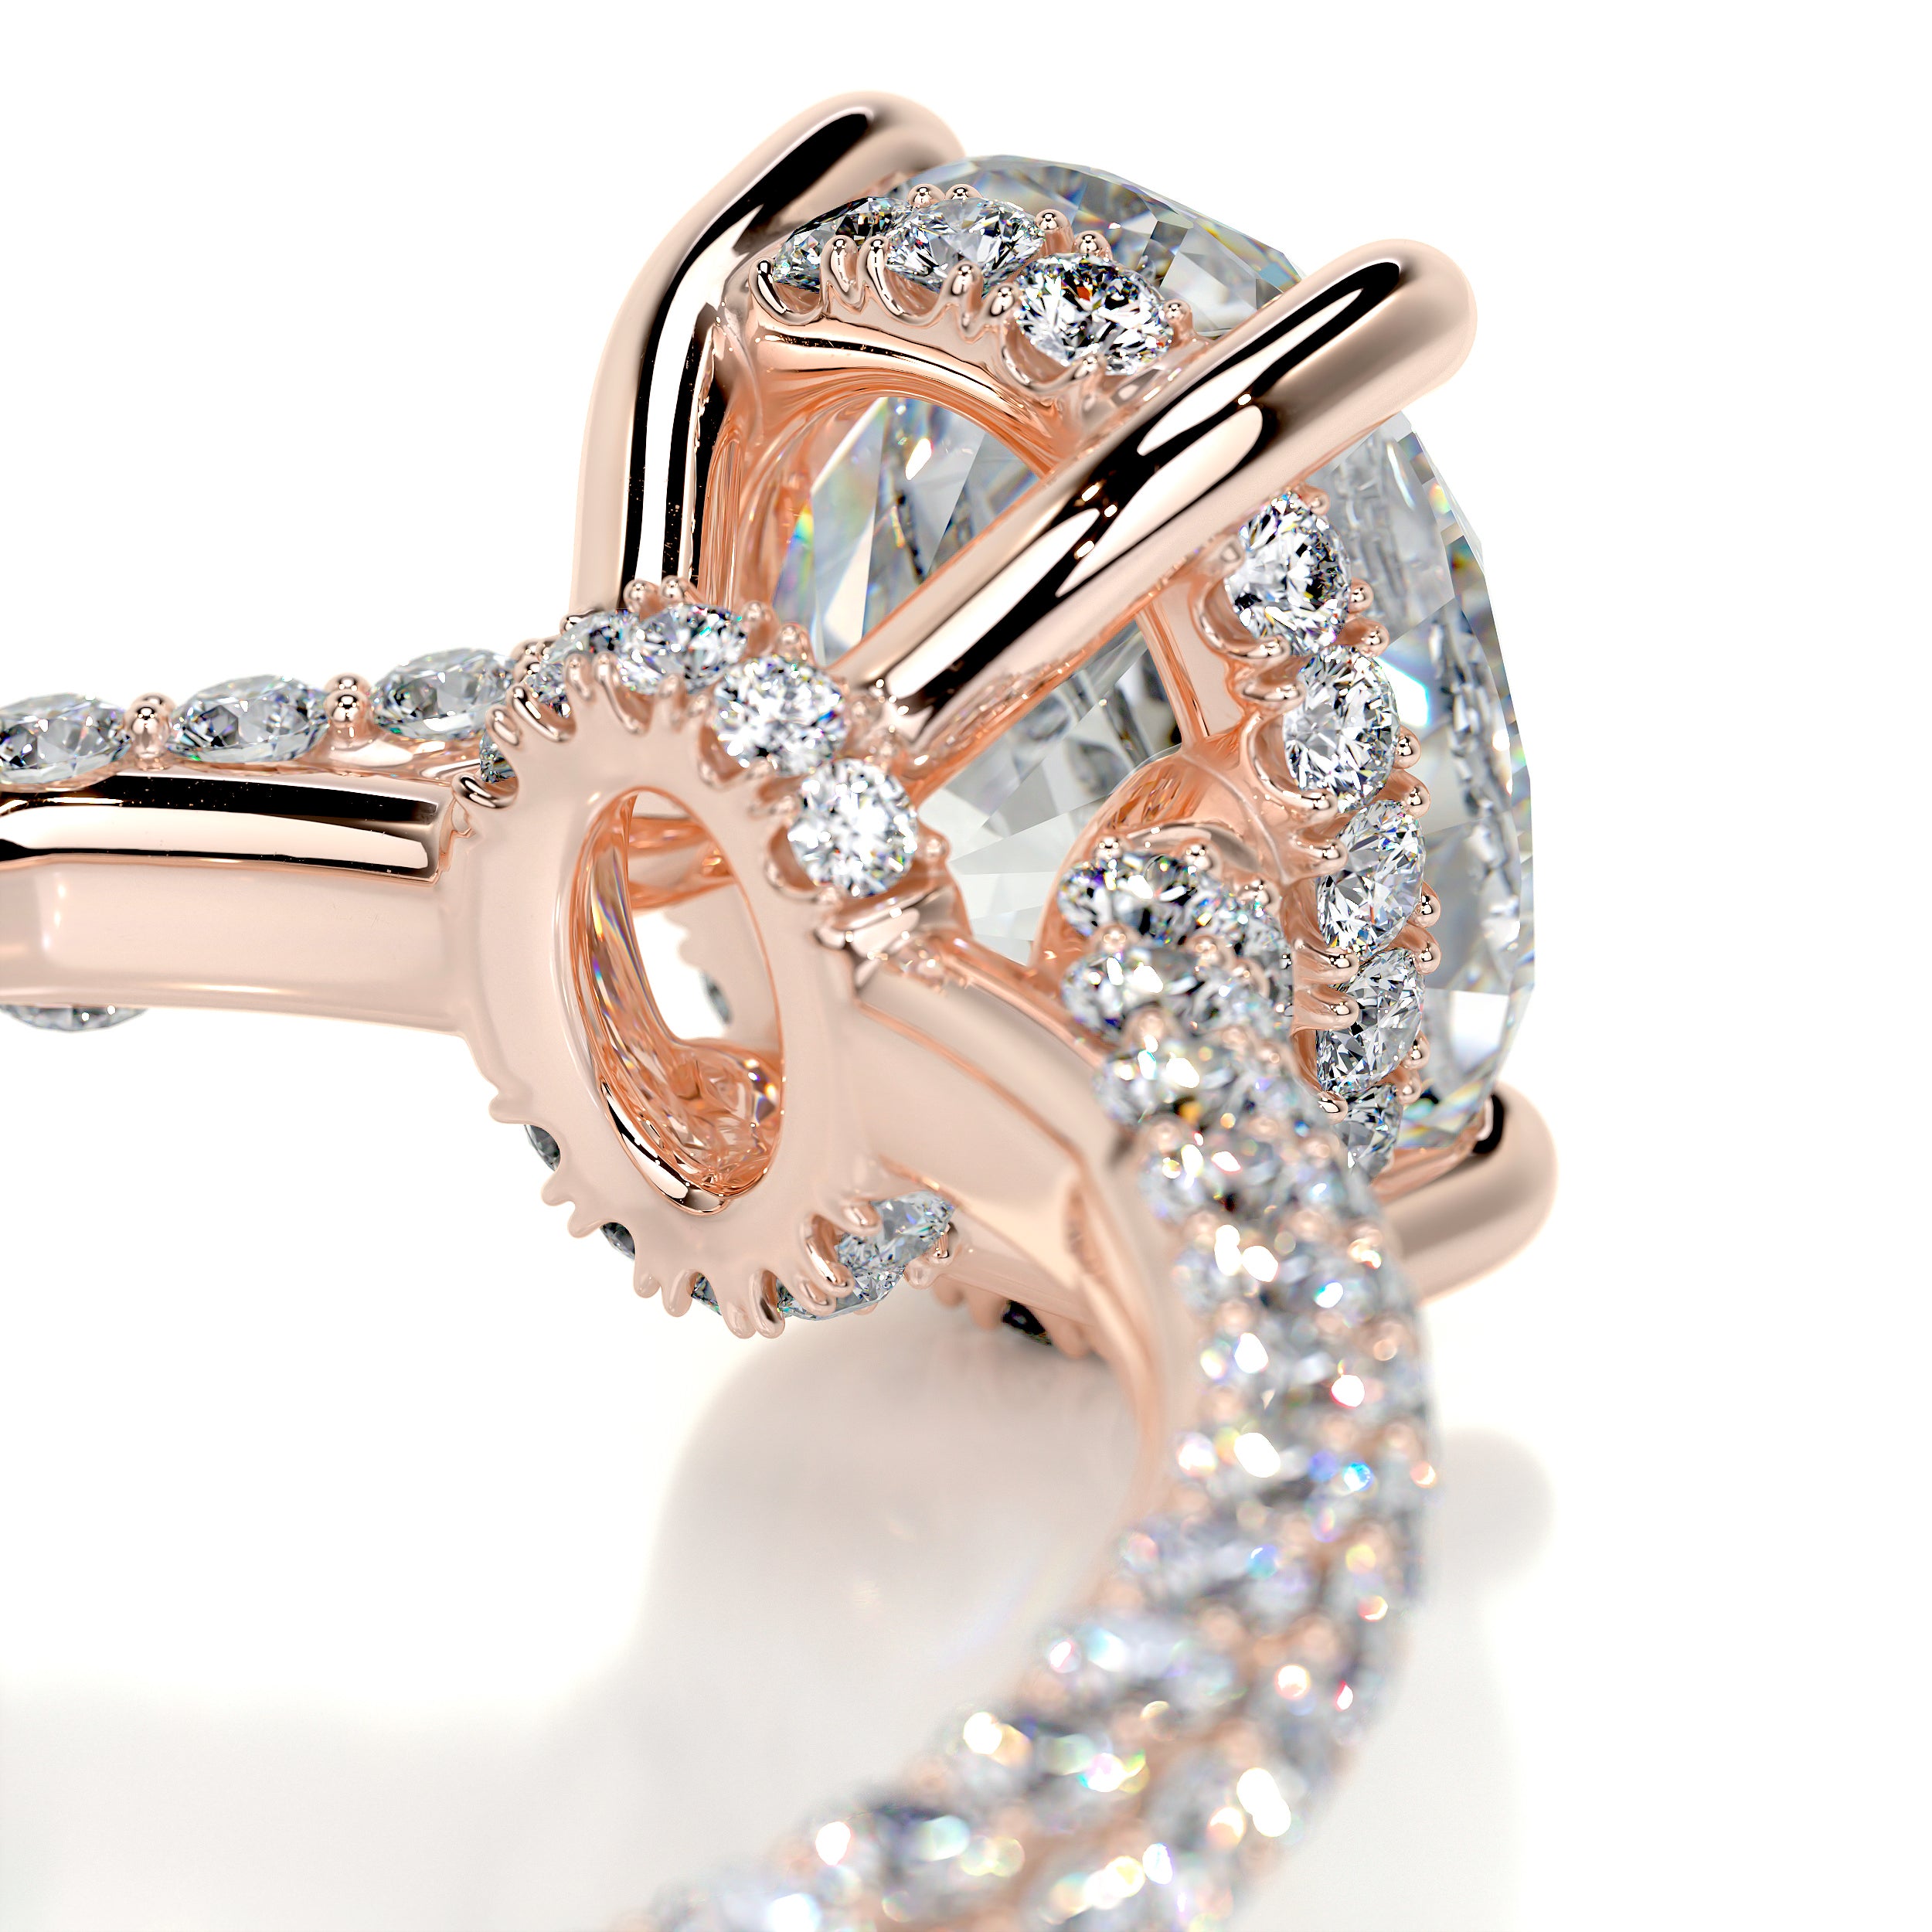 Rebecca Moissanite & Diamonds Ring -14K Rose Gold